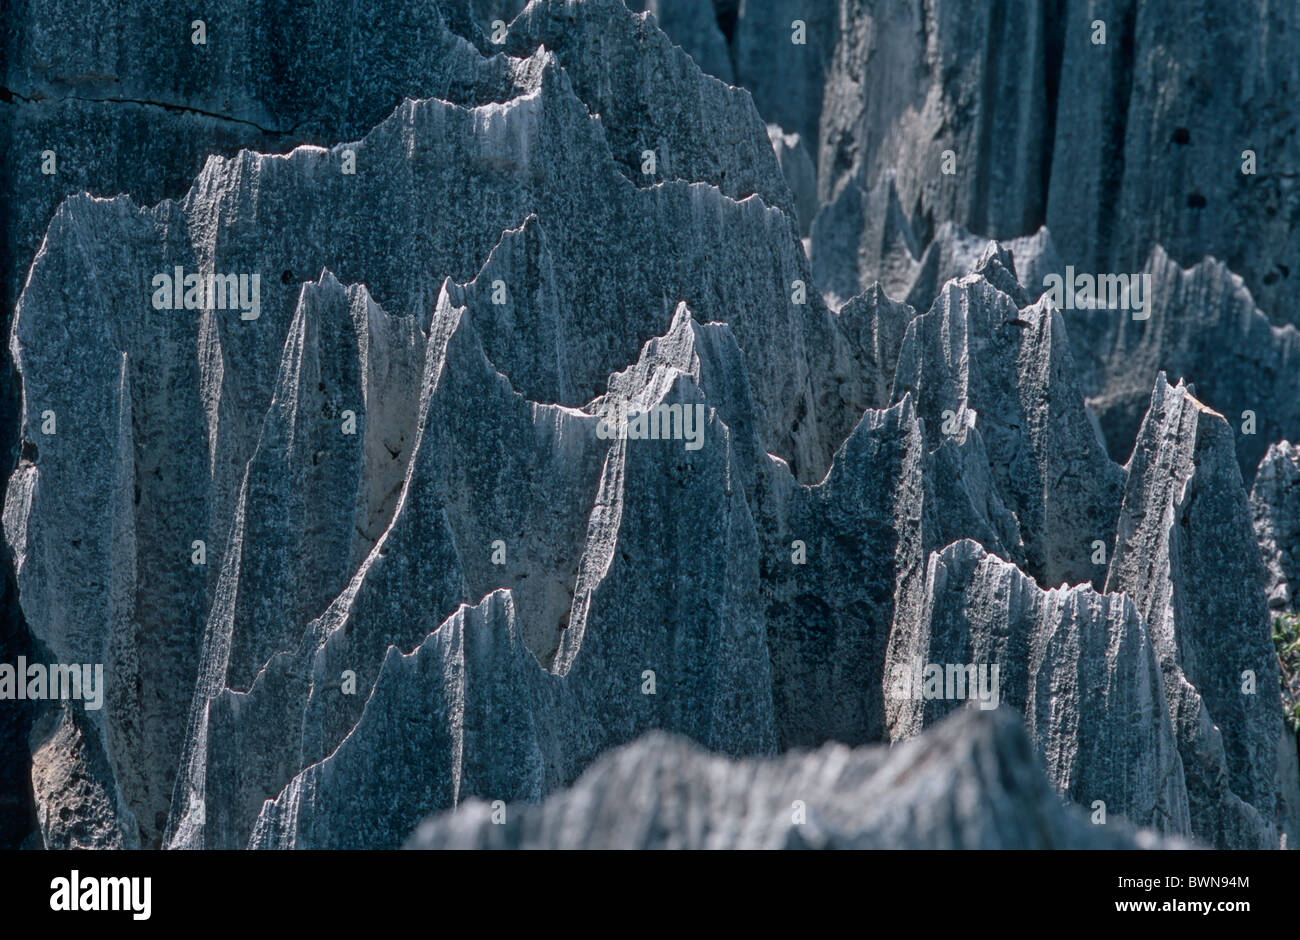 Forêt de pierre de Shilin Asie Chine Kunming Yunnan, l'érosion des formations karstiques du paysage rock rocky pinnac Banque D'Images